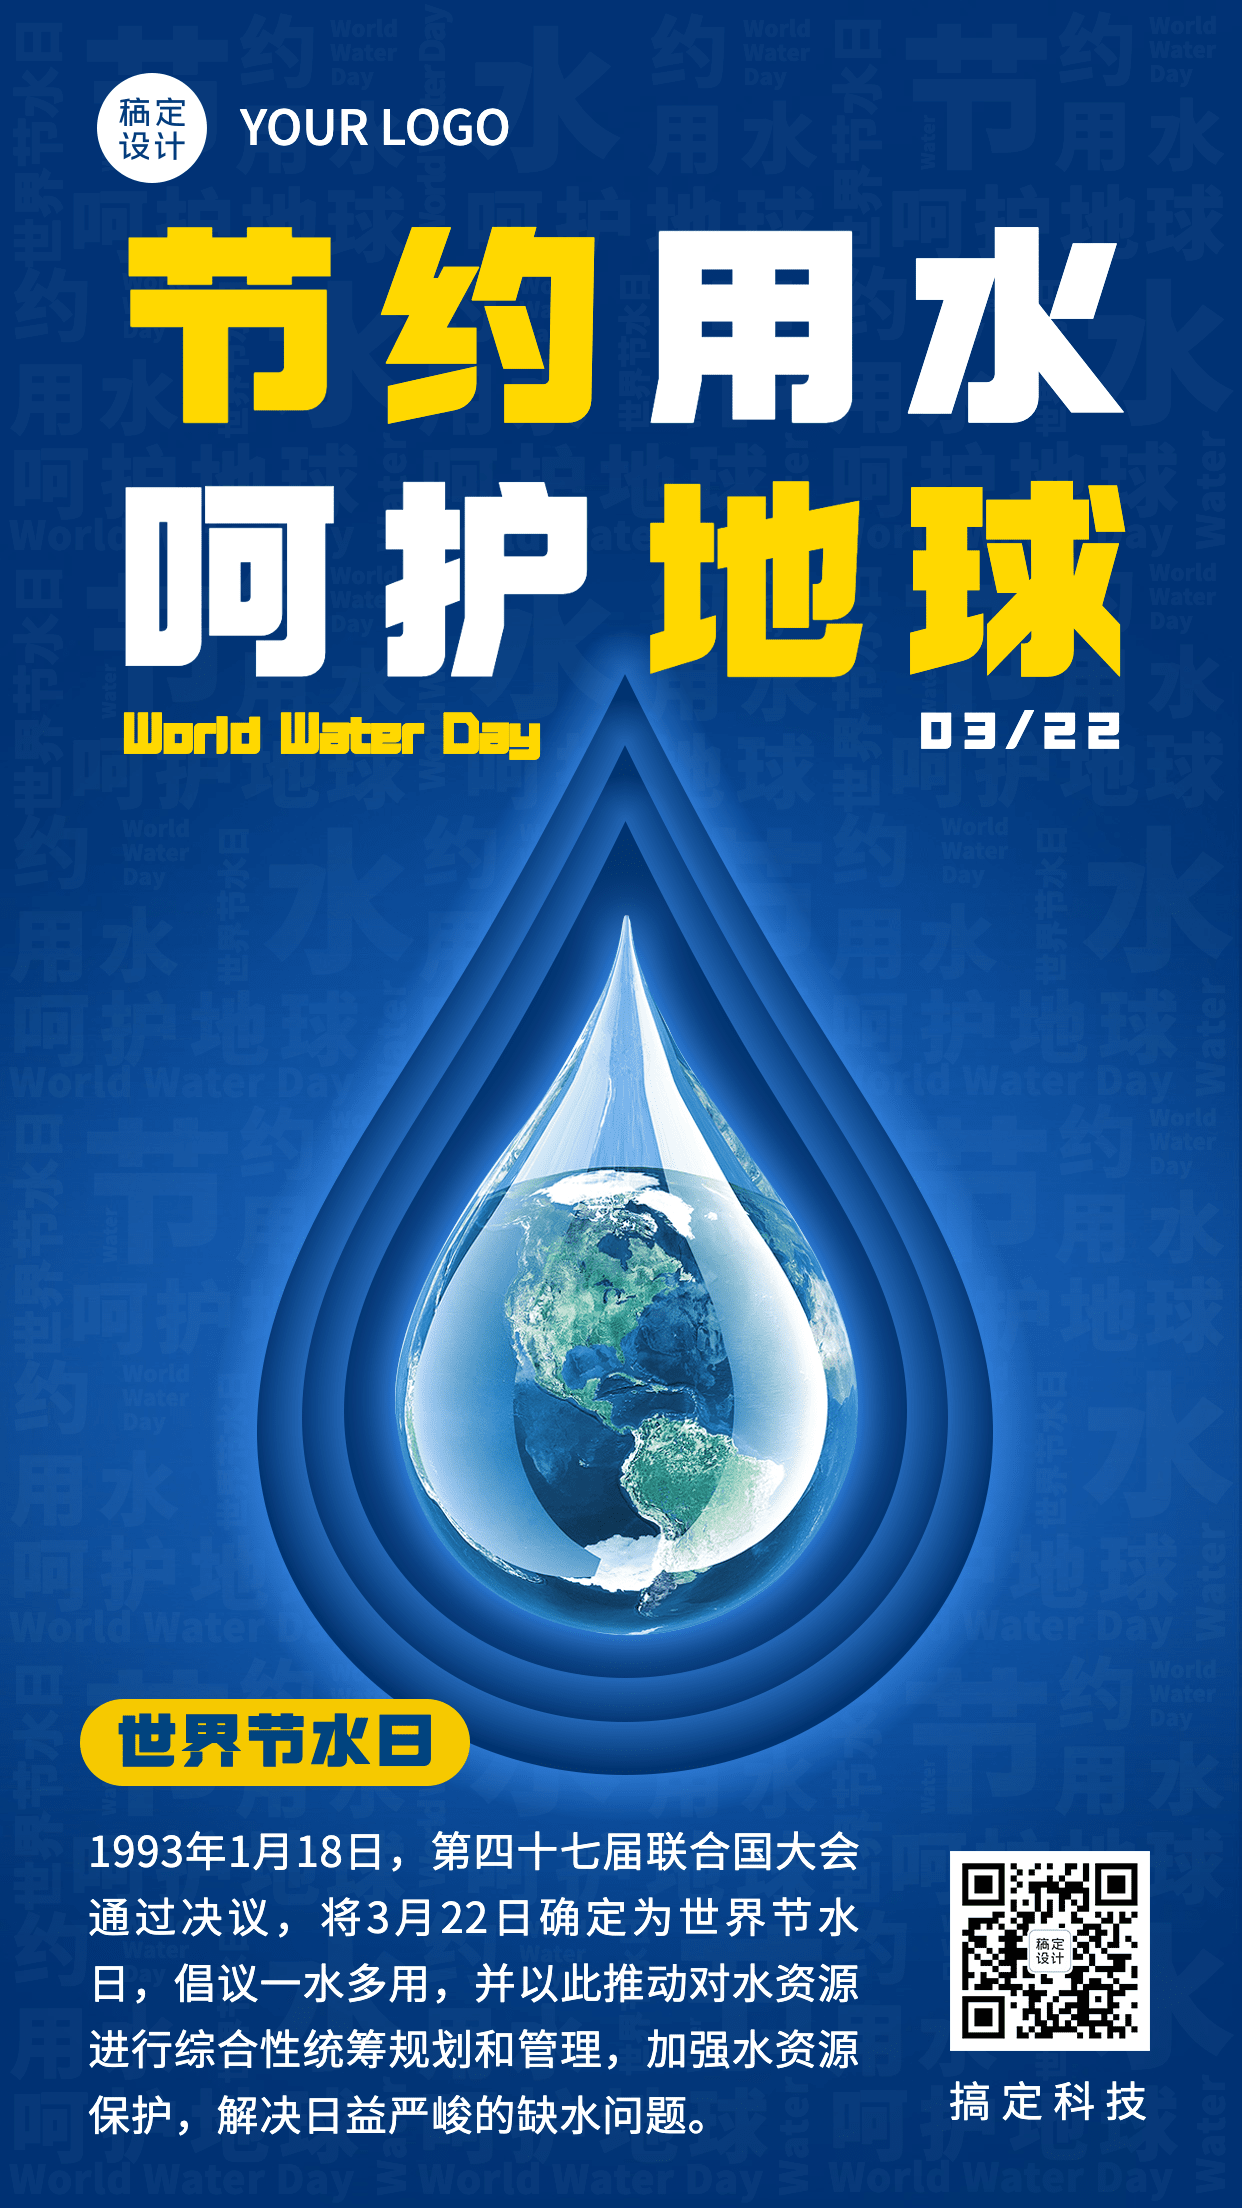 世界节水日节日科普宣传创意手机海报